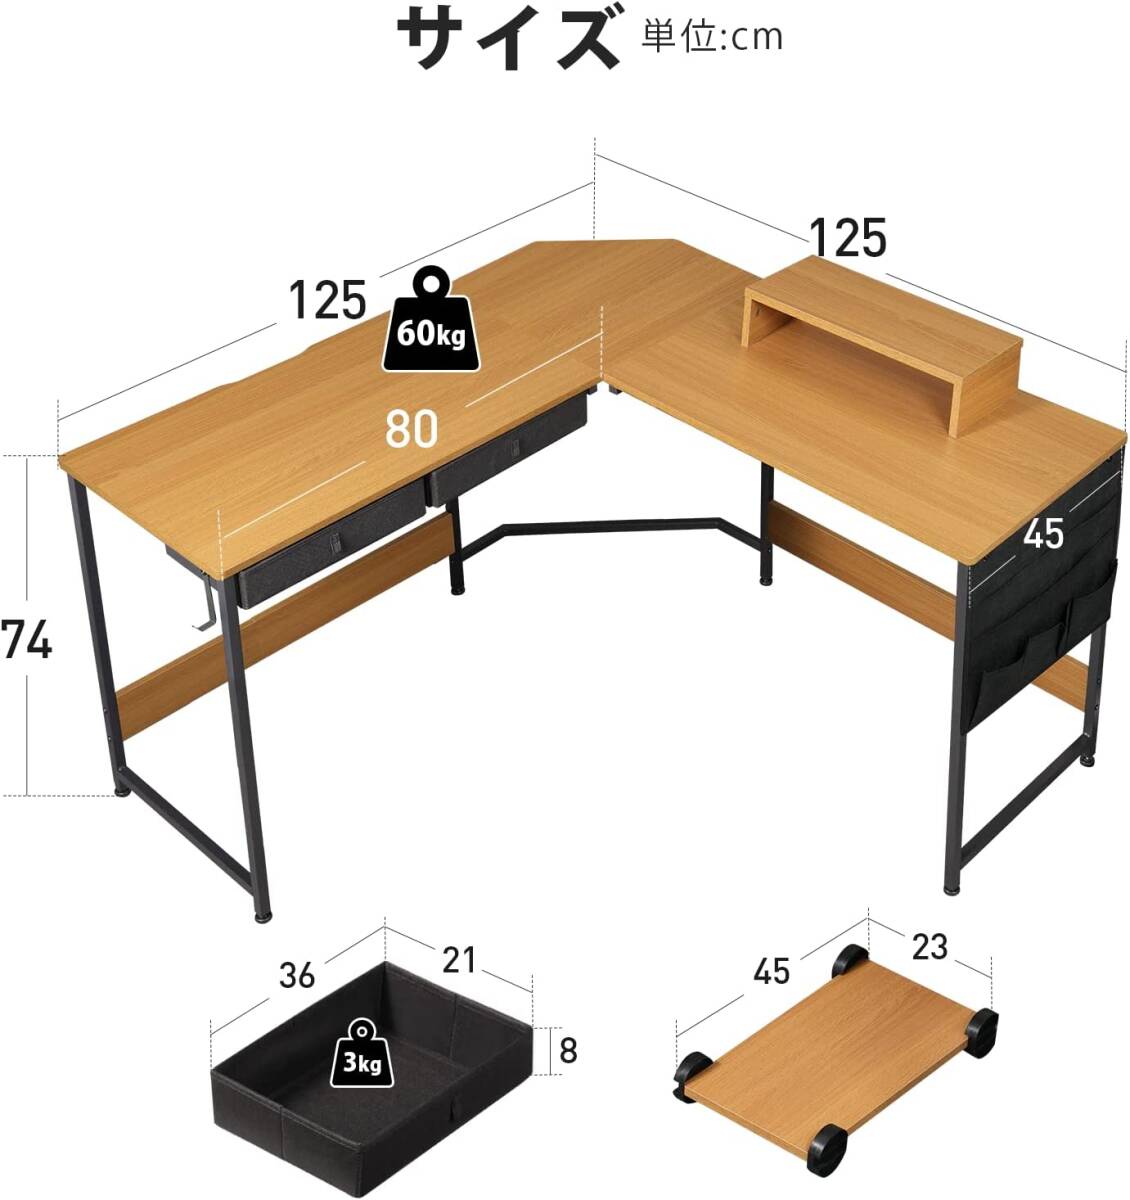 YeTom L знак стол стол компьютерный стол боковой упаковочный пакет имеется pc стол угол стол офис стол . чуть более стол письменный стол натуральный 